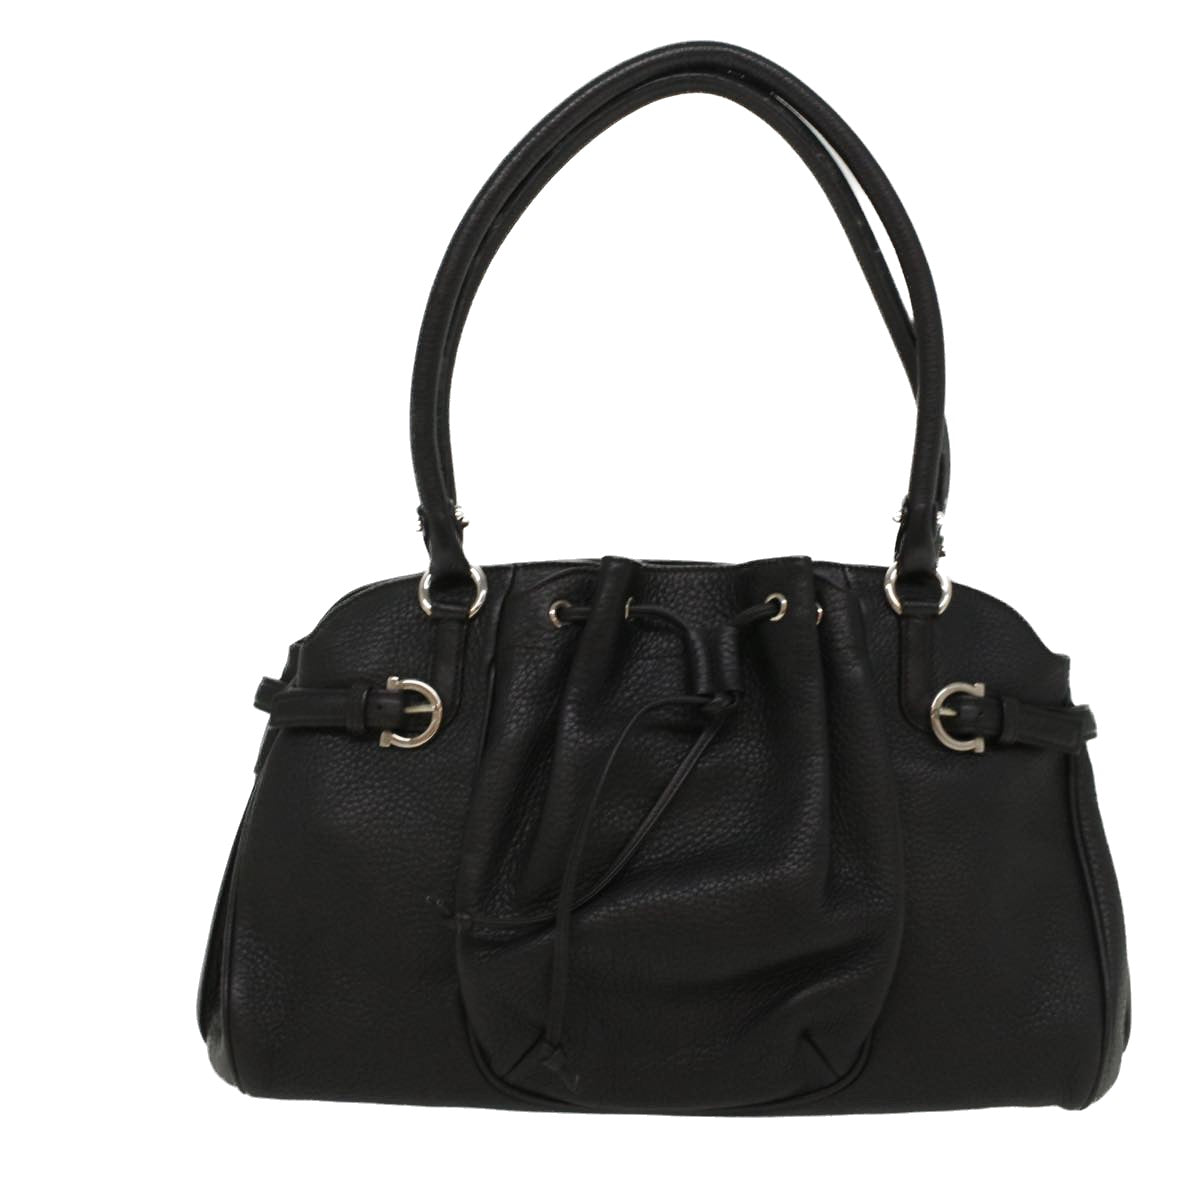 Salvatore Ferragamo Hand Bag Leather Black Auth 53449 - 0